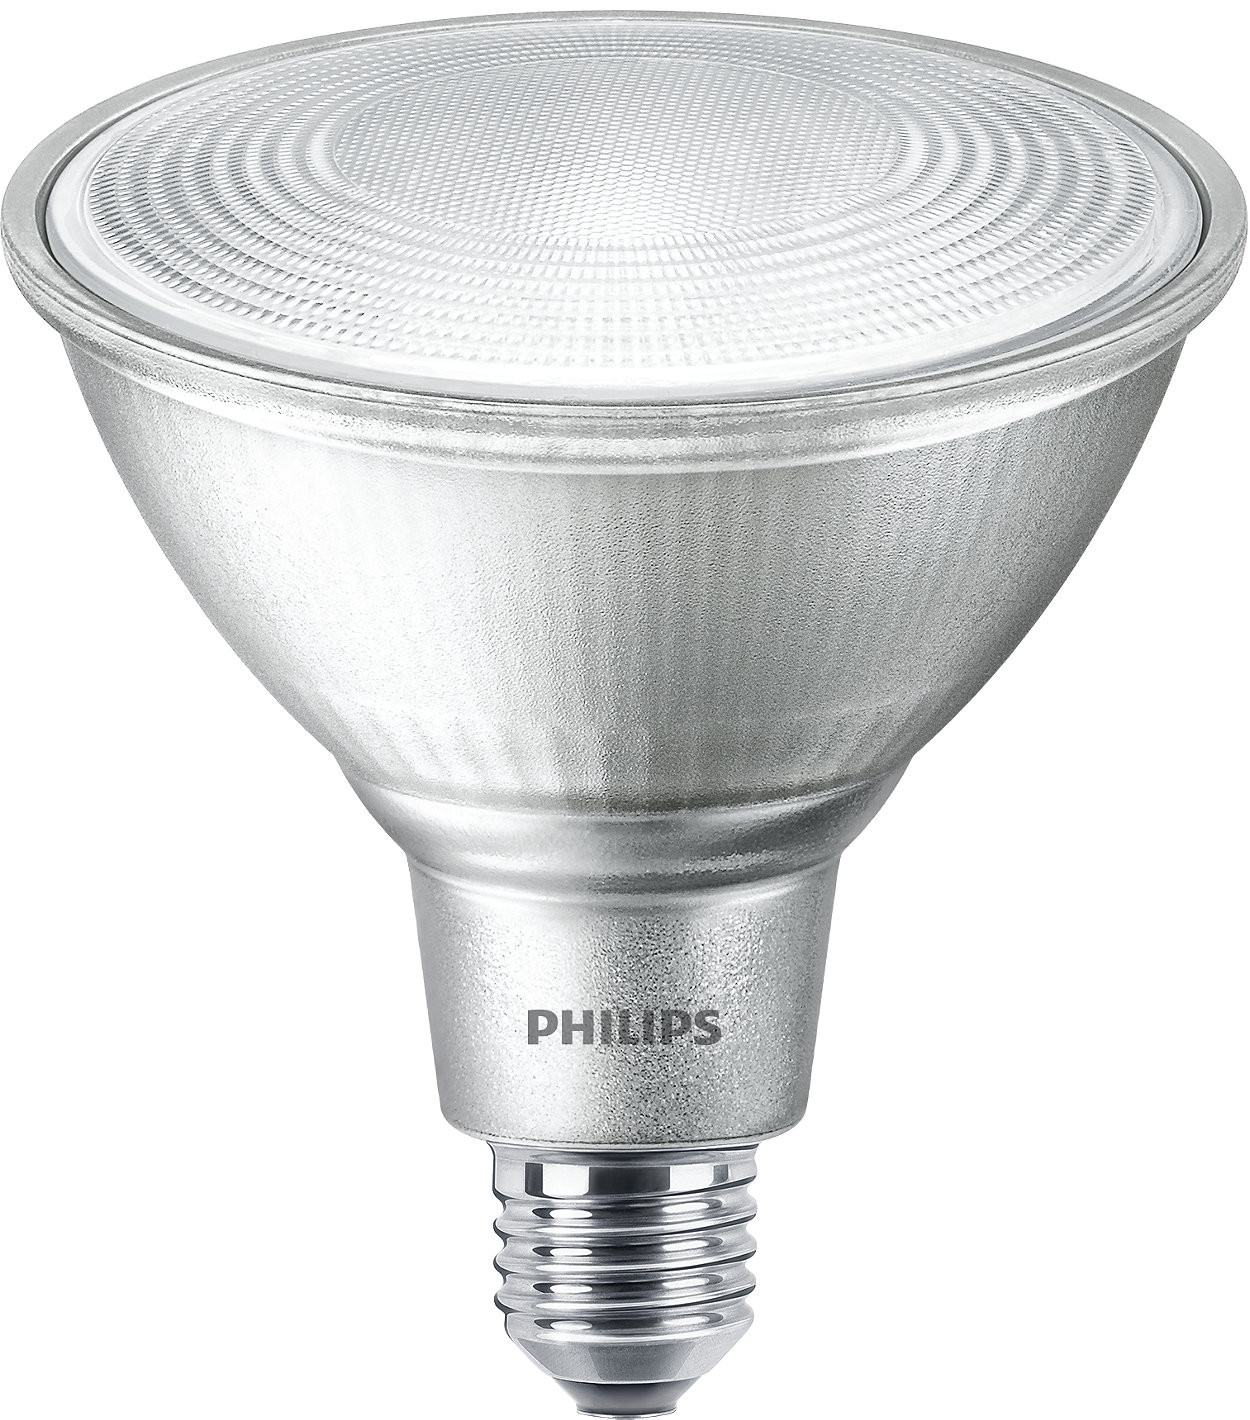 Philips Master LEDspot Classic D 13-100W PAR38 827 25D